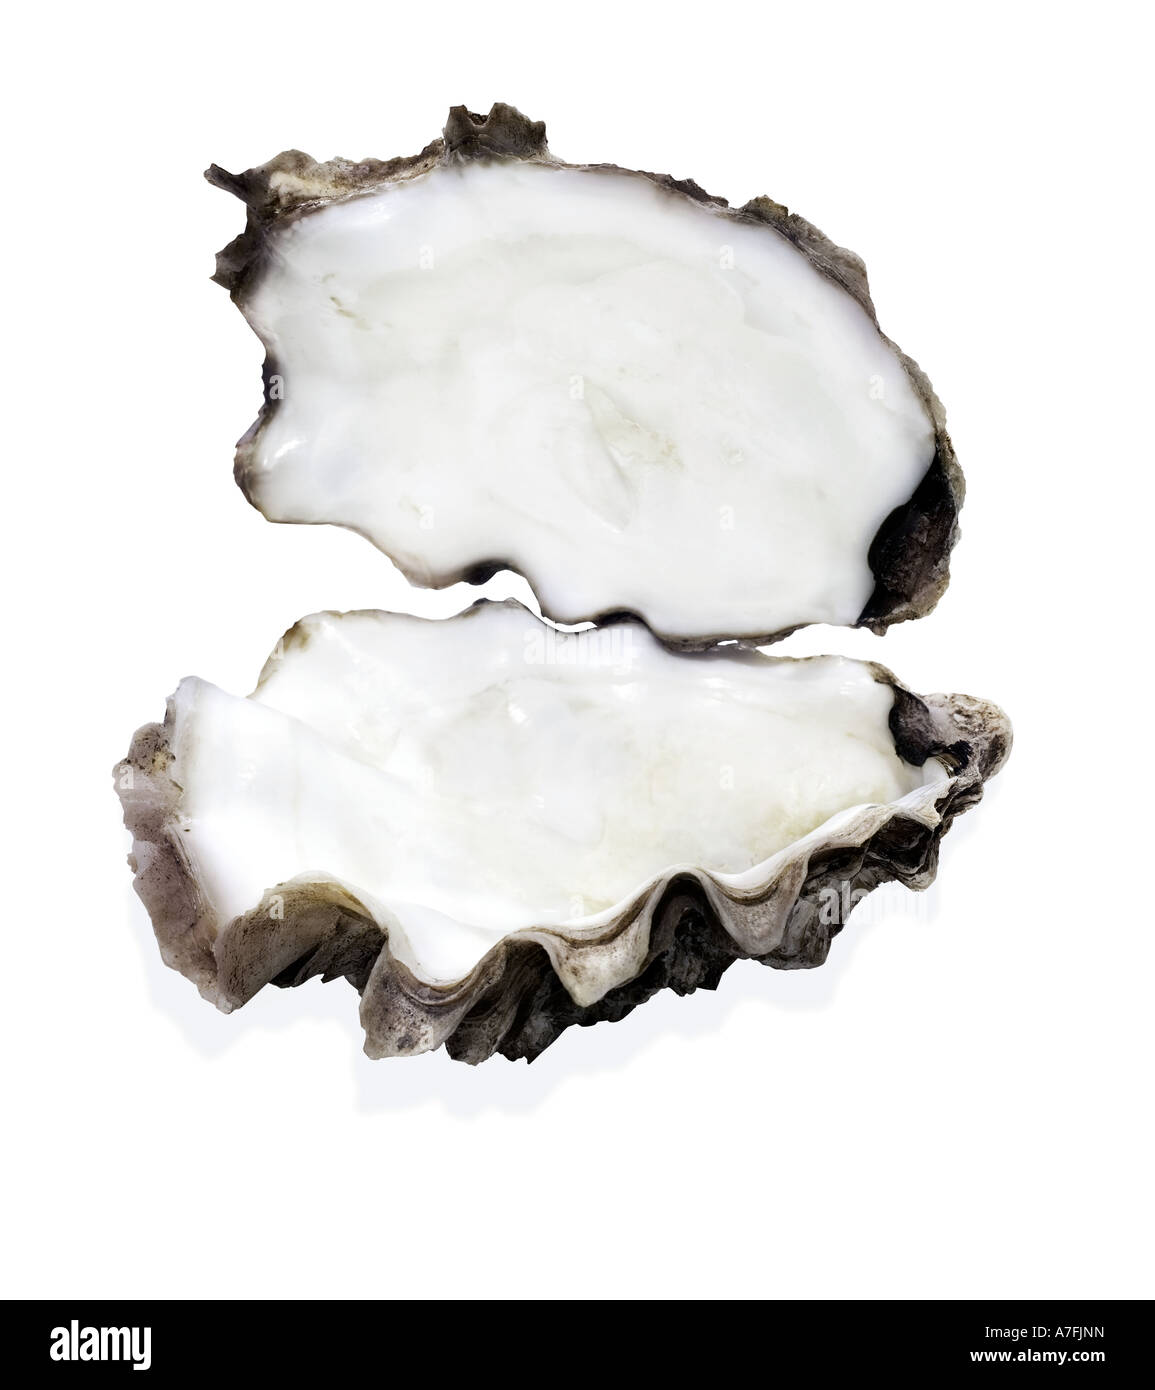 Oyster, guscio di ostrica, aprire il guscio di ostrica senza perla, ritaglio, taglio Foto Stock